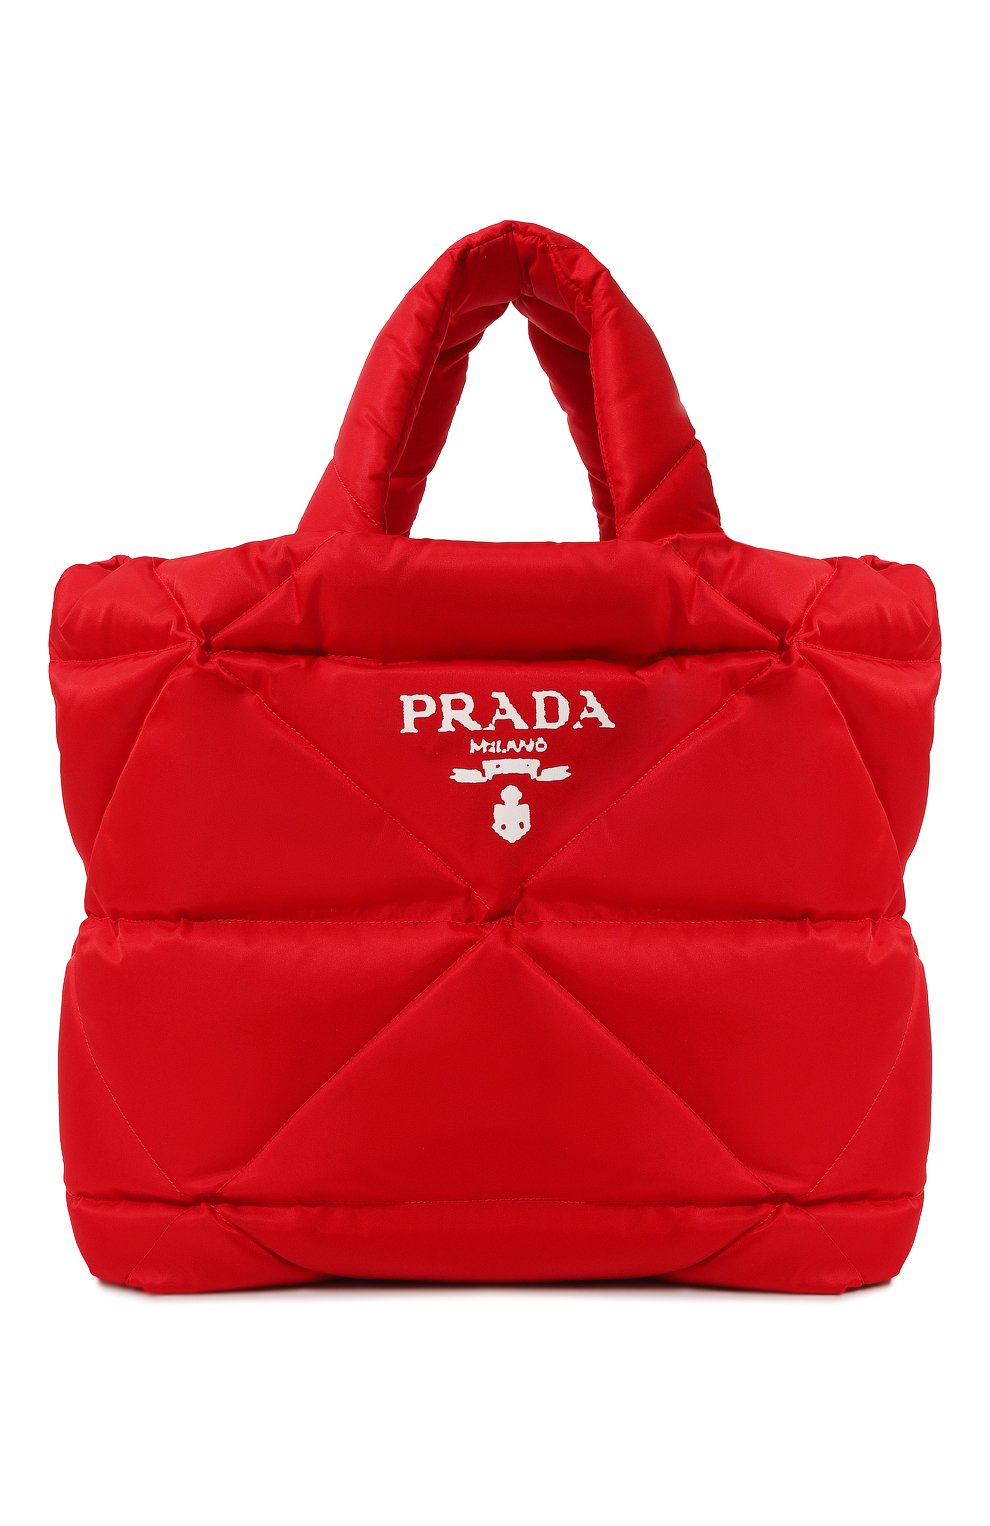 Сумки-шоперы Prada, Текстильная сумка-тоут Prada, Италия, Красный, Полиамид: 100%;, 13025059  - купить